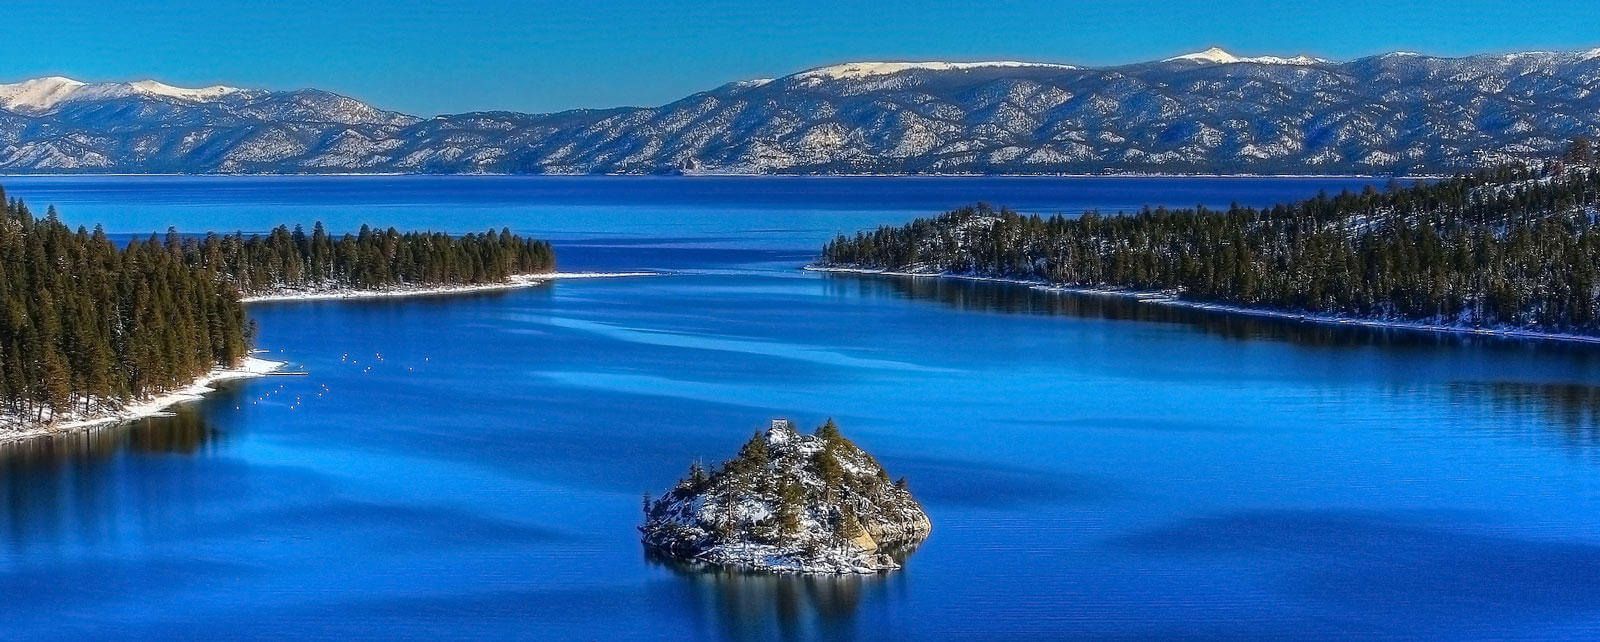 Hồ Tahoe – hòn ngọc của nước Mỹ